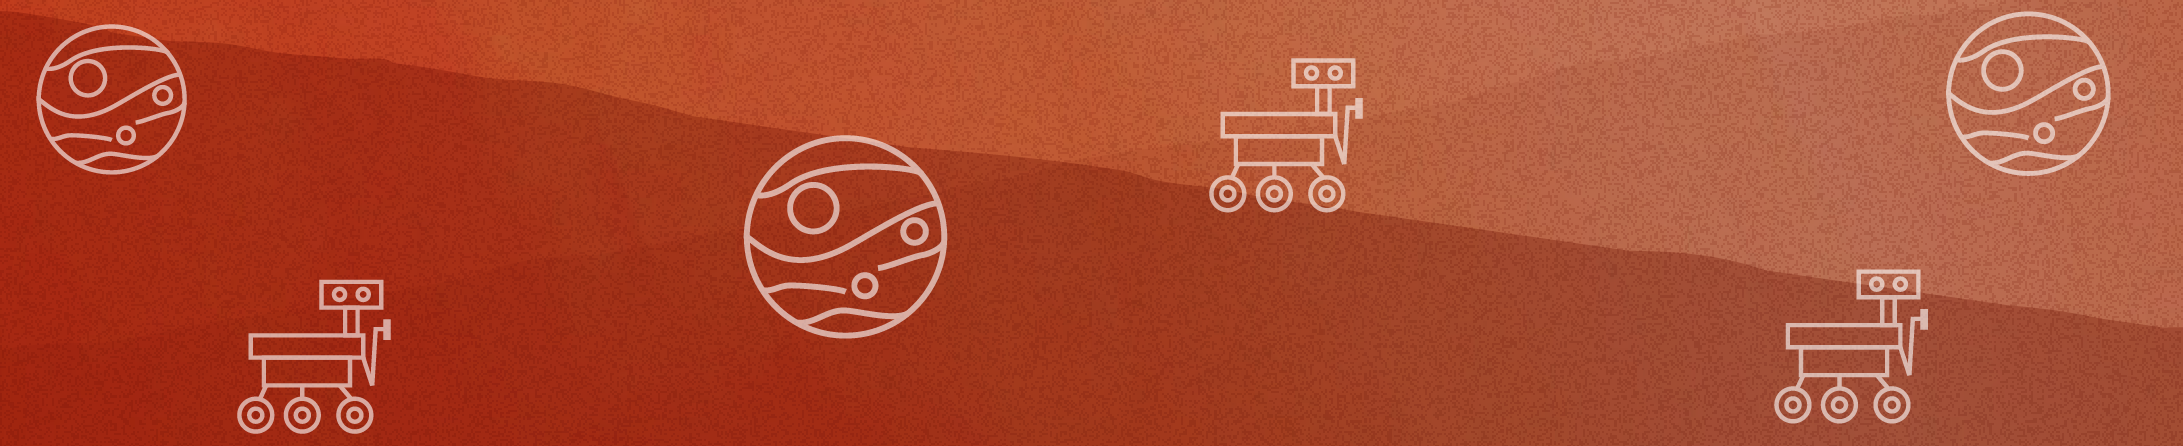 Misión Marte: Rovers enviados al planeta rojo